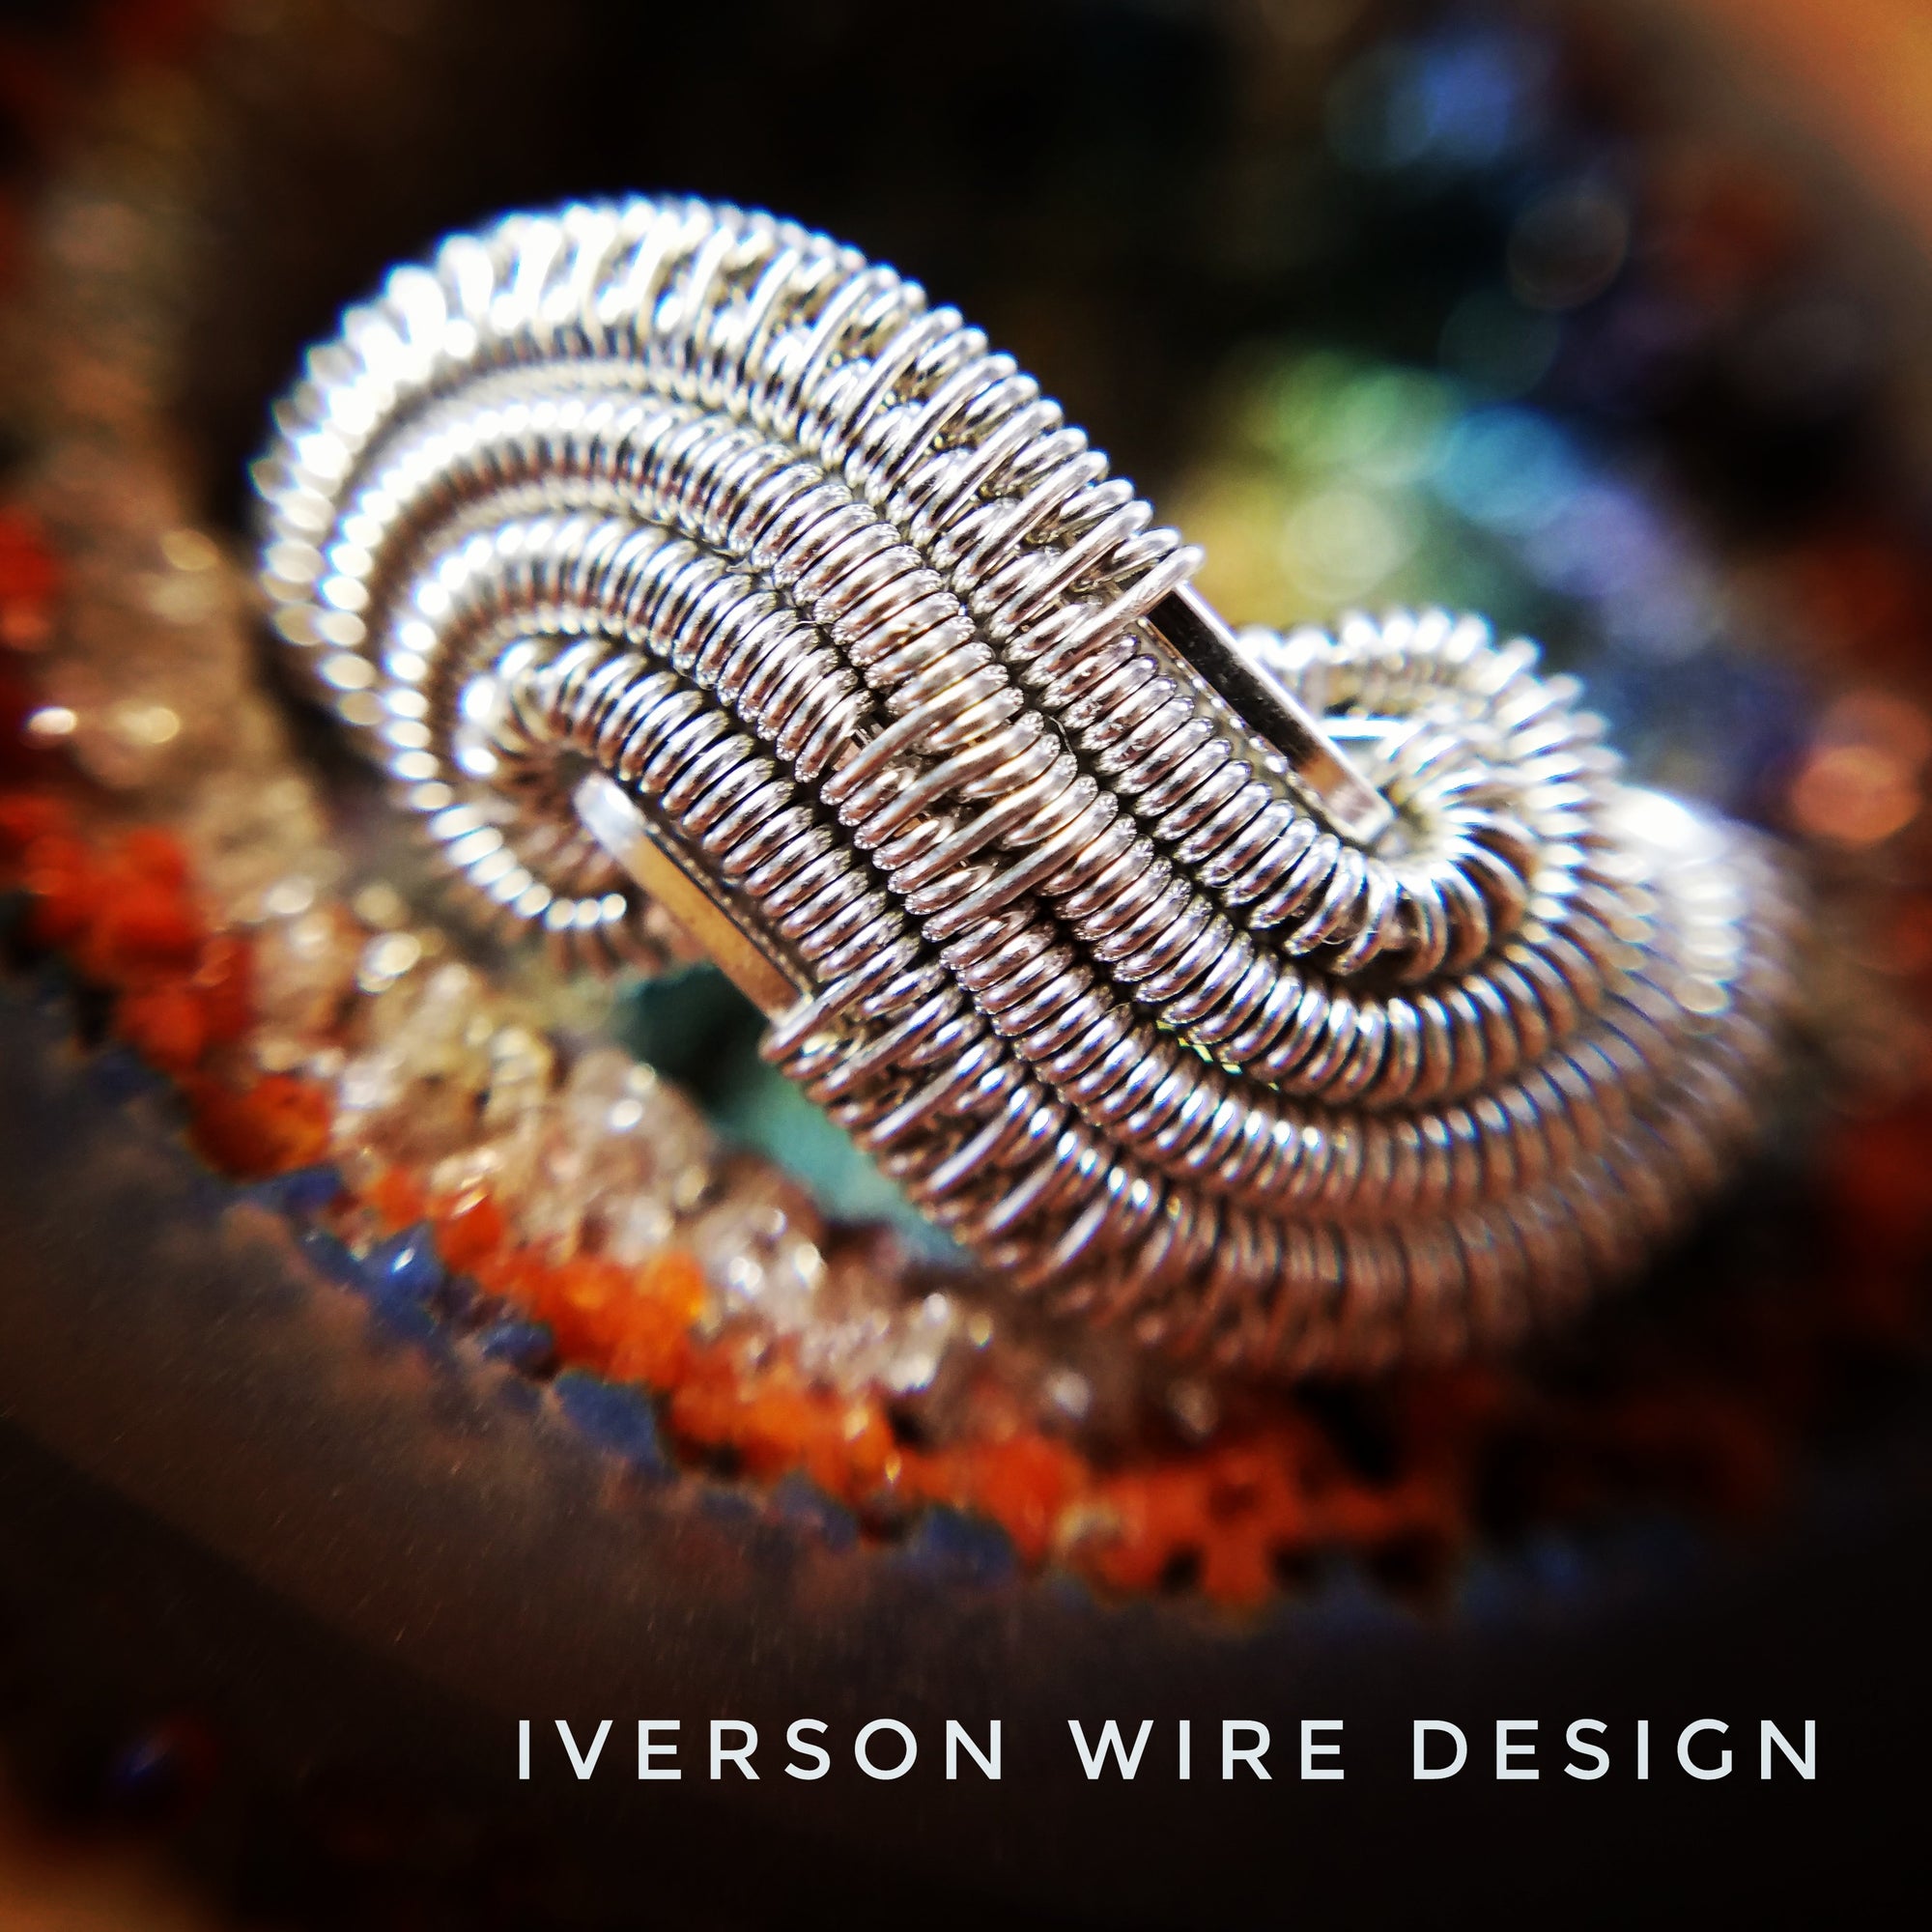 Iverson Wire Design